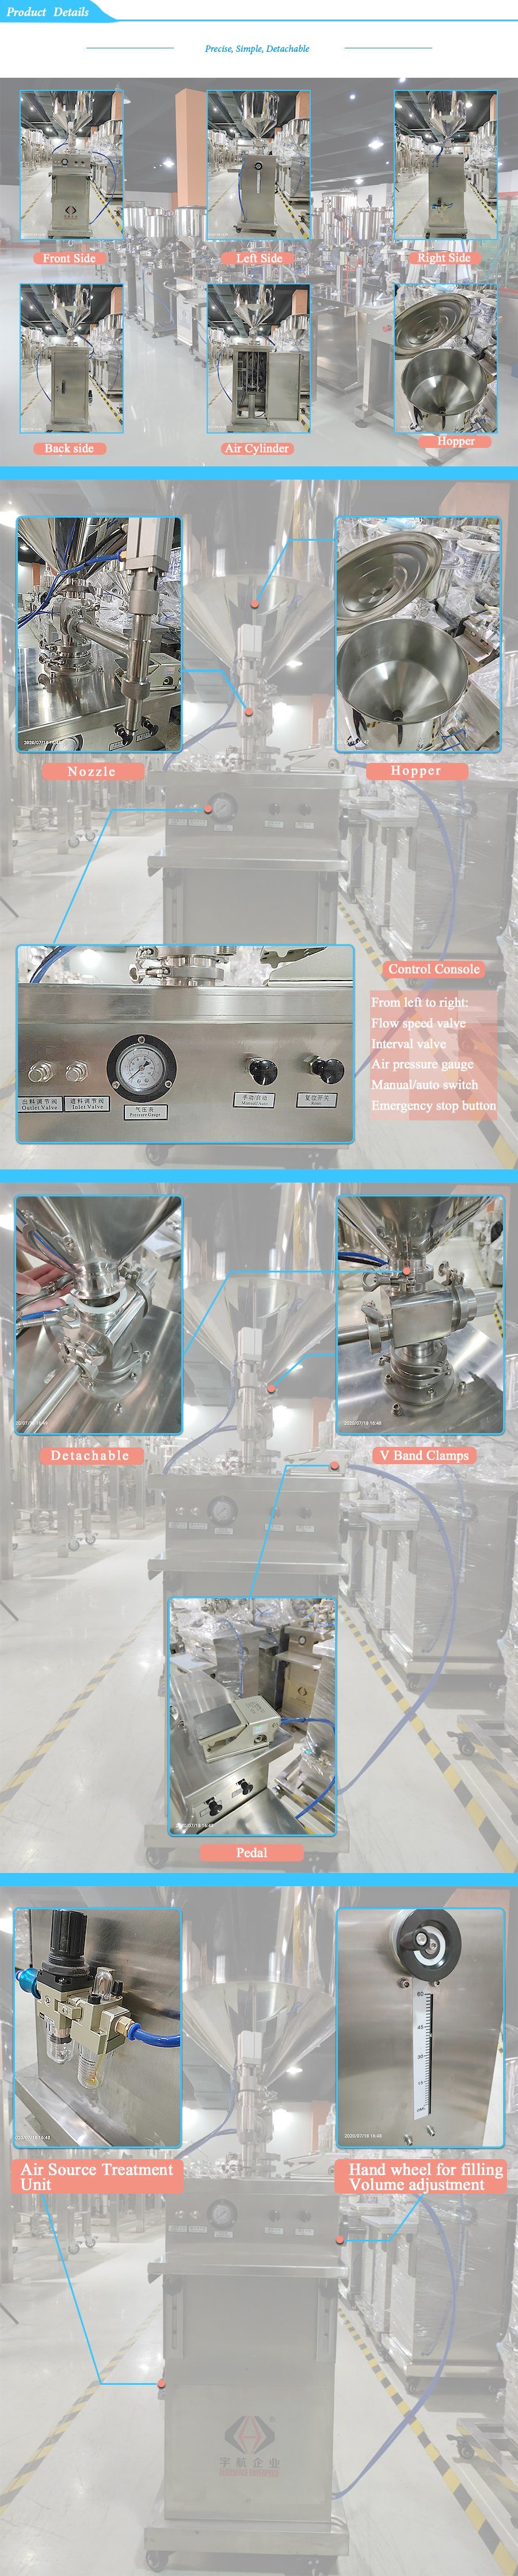 Semi Automatic Vertical Filling Machine Liquid Manual Hand Filling Machine Cosmetic Machinery